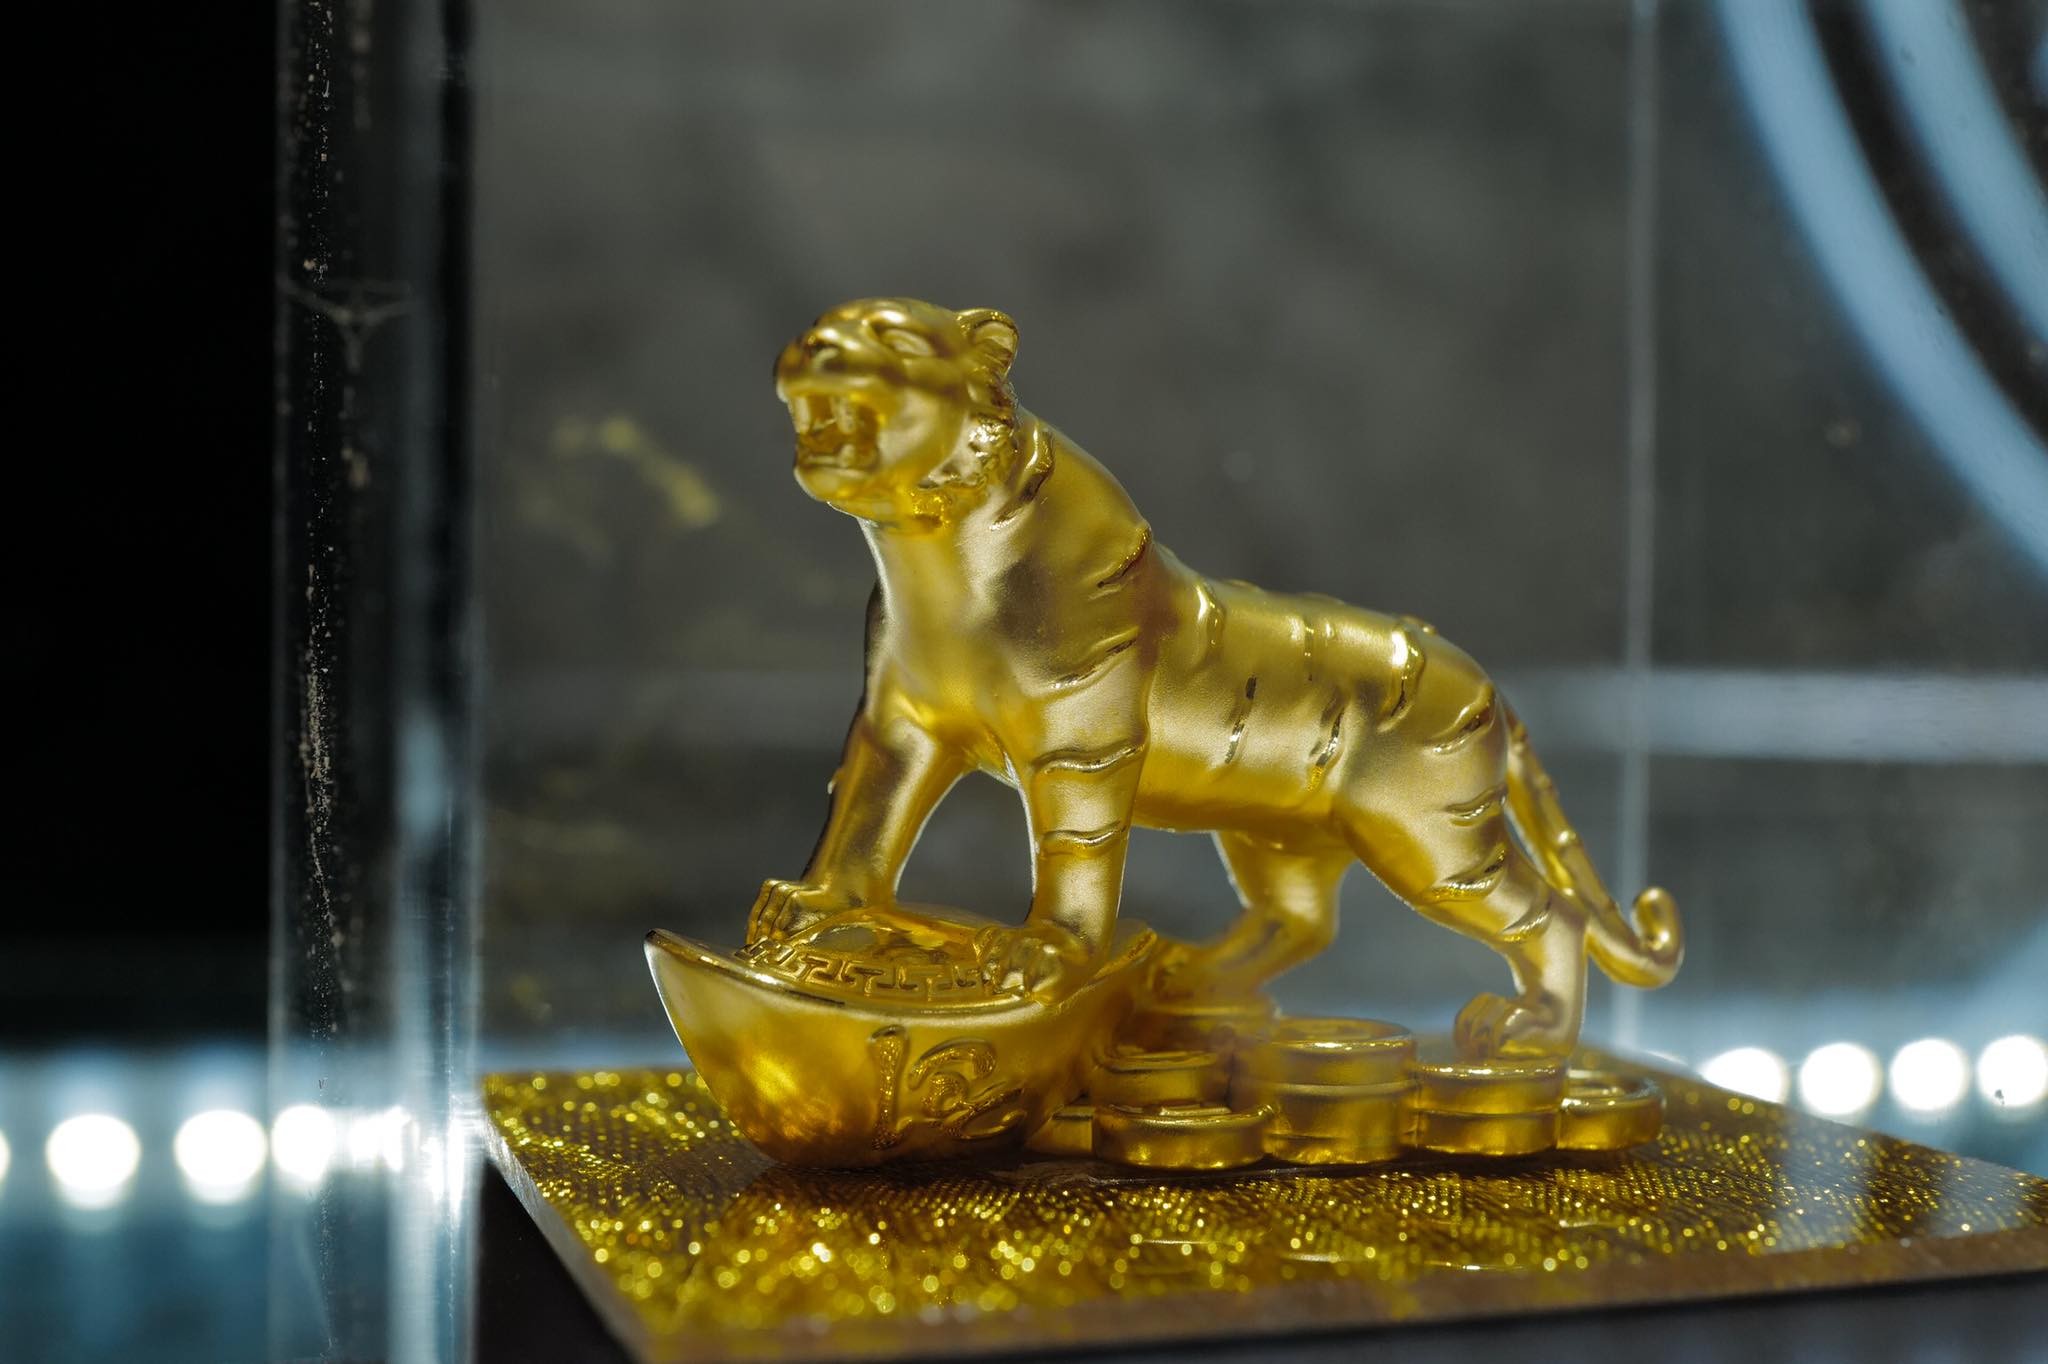 
Sản phẩm thu hút sự quan tâm nhất của năm Nhâm Dần là tượng hổ mạ vàng đứng cạnh thỏi vàng. Sản phẩm có giá bán từ 6 đến 10 triệu đồng tùy loại. Nhiều người đã mua sản phẩm này về trưng bày hoặc biếu tặng.
